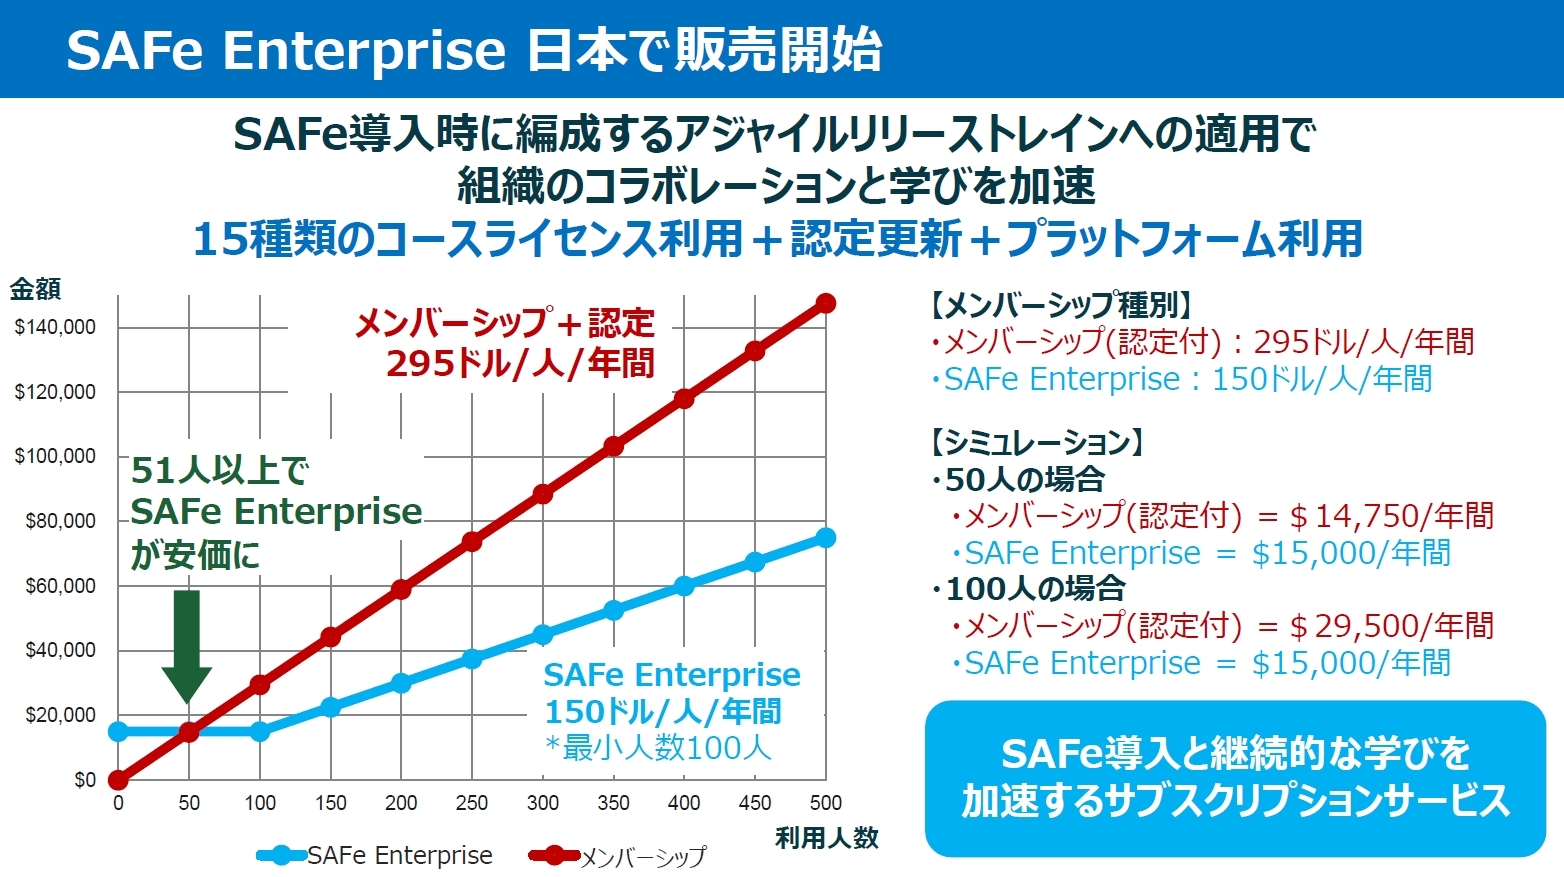 日本向け「SAFe Enterprise」の導入促進策